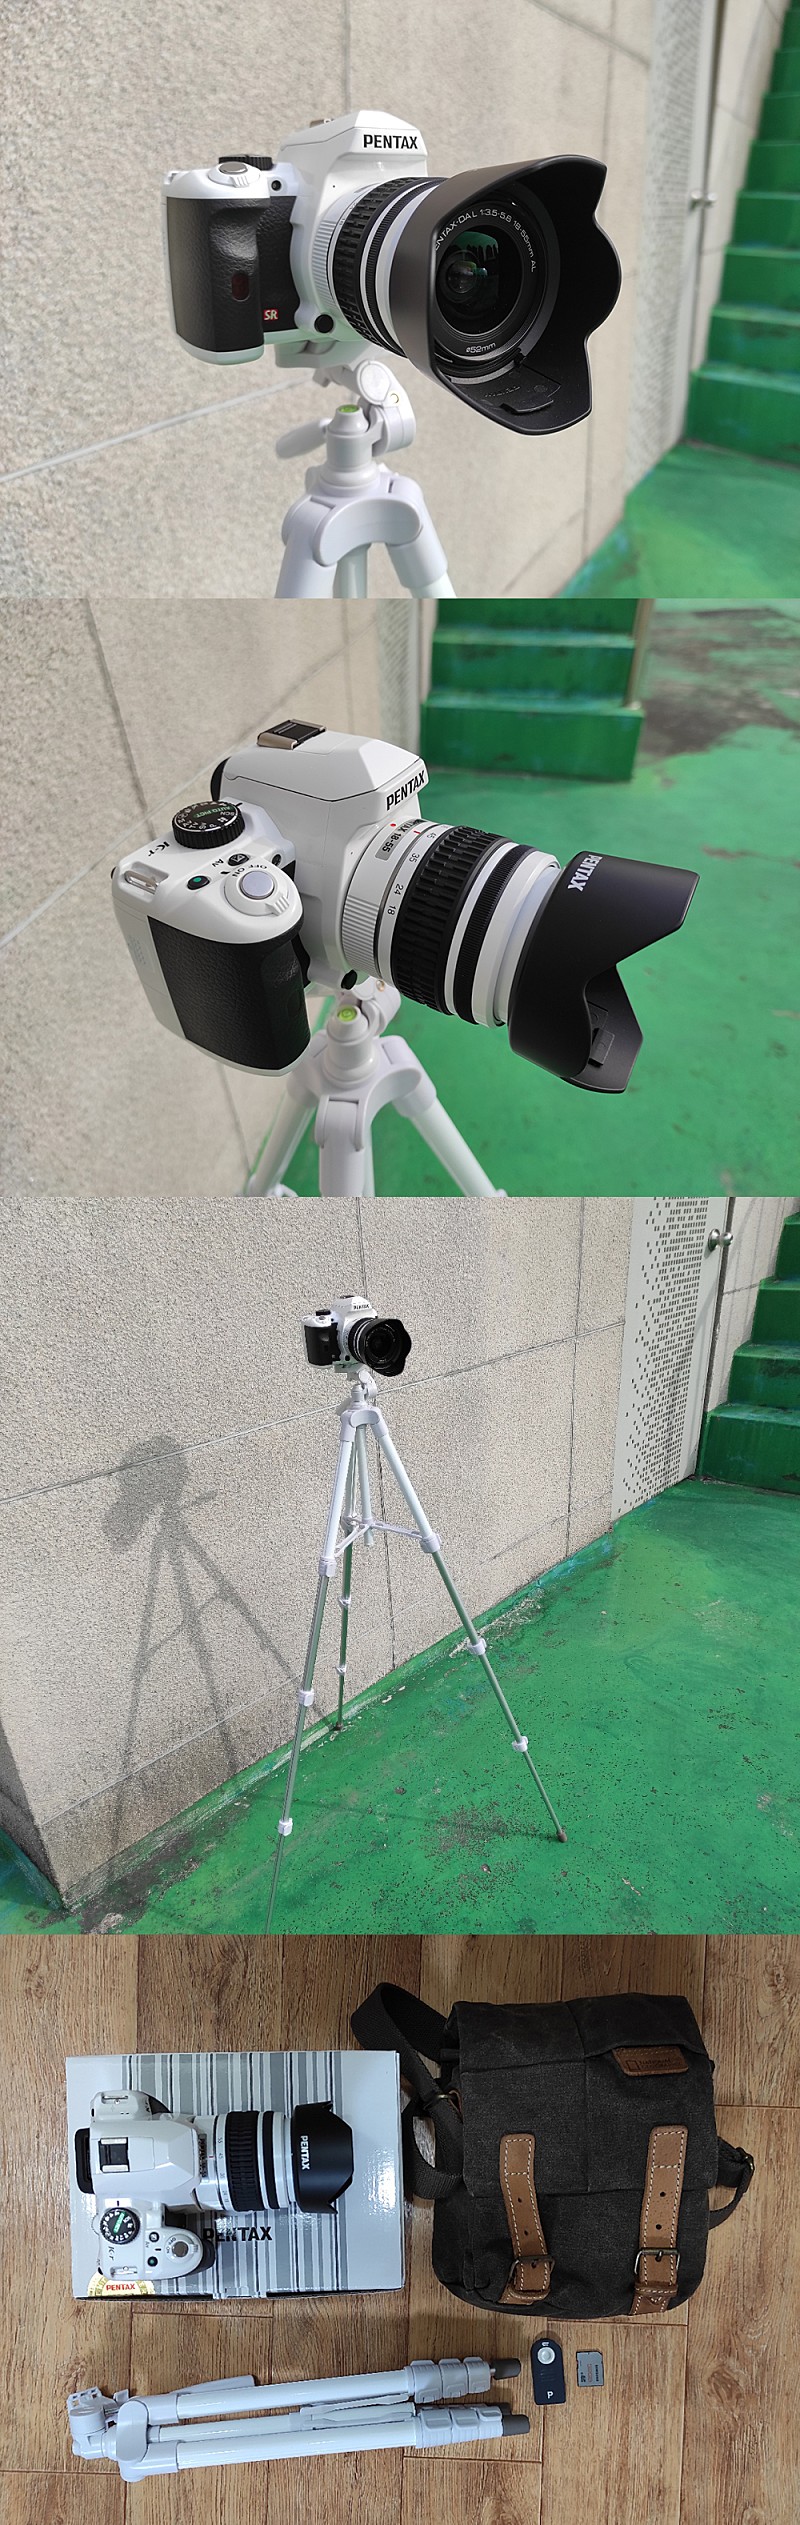 새것과 동일한 상태의 DSLR 입문용 예쁜 펜탁스 카메라 60만원 팝니다.